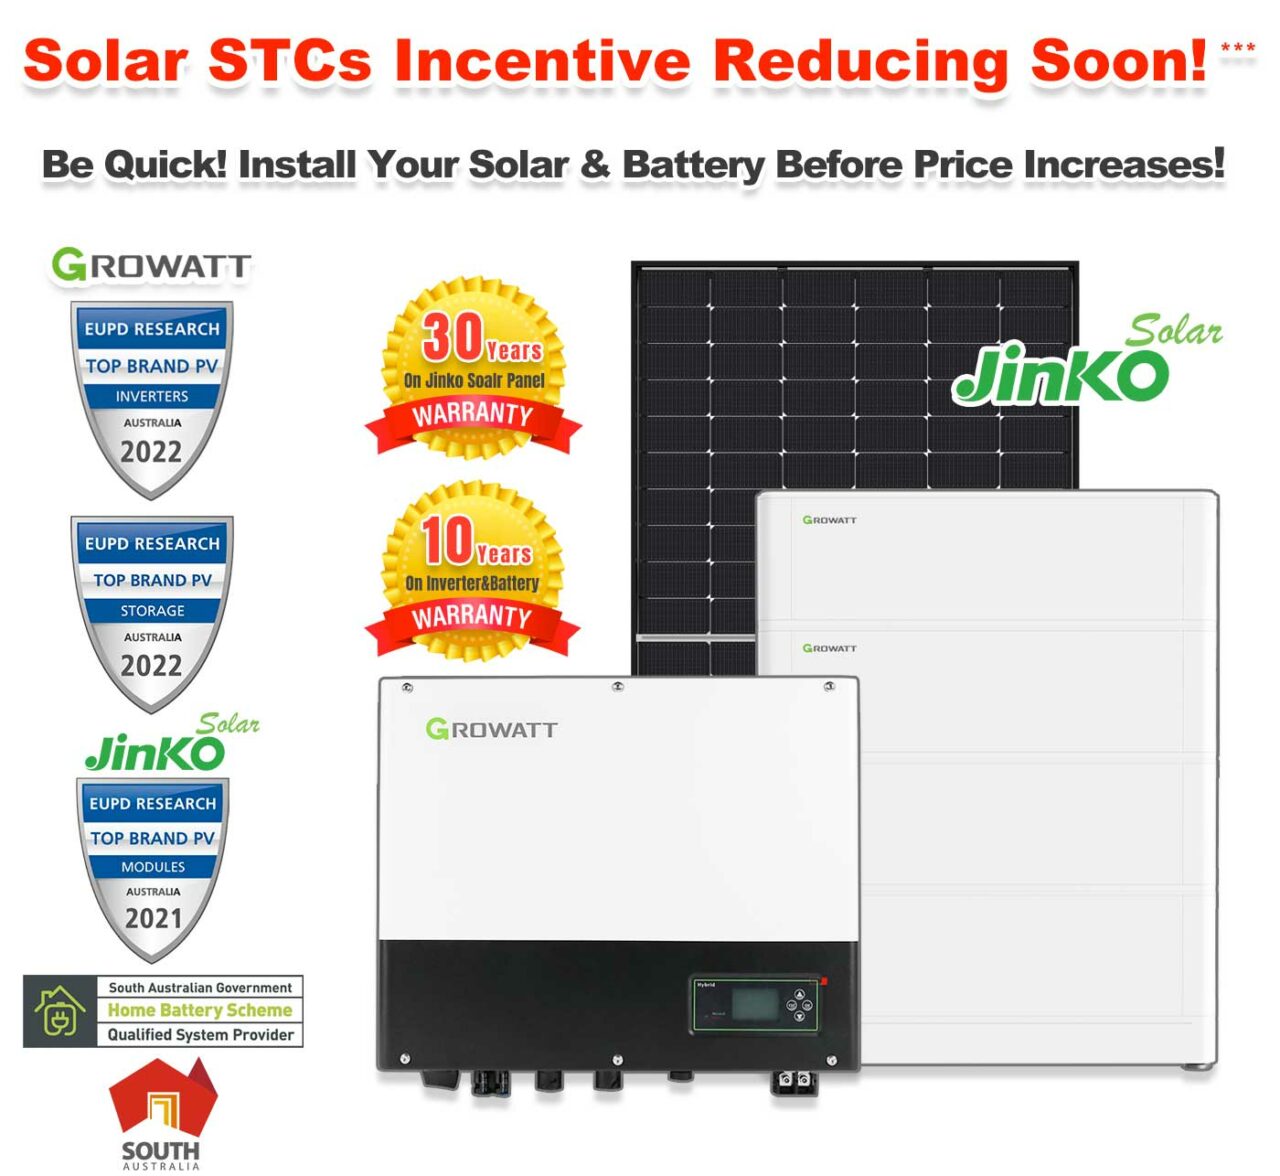 SA s 1 Adelaide Solar Panel Home Battery Rebate Sunterra Solar